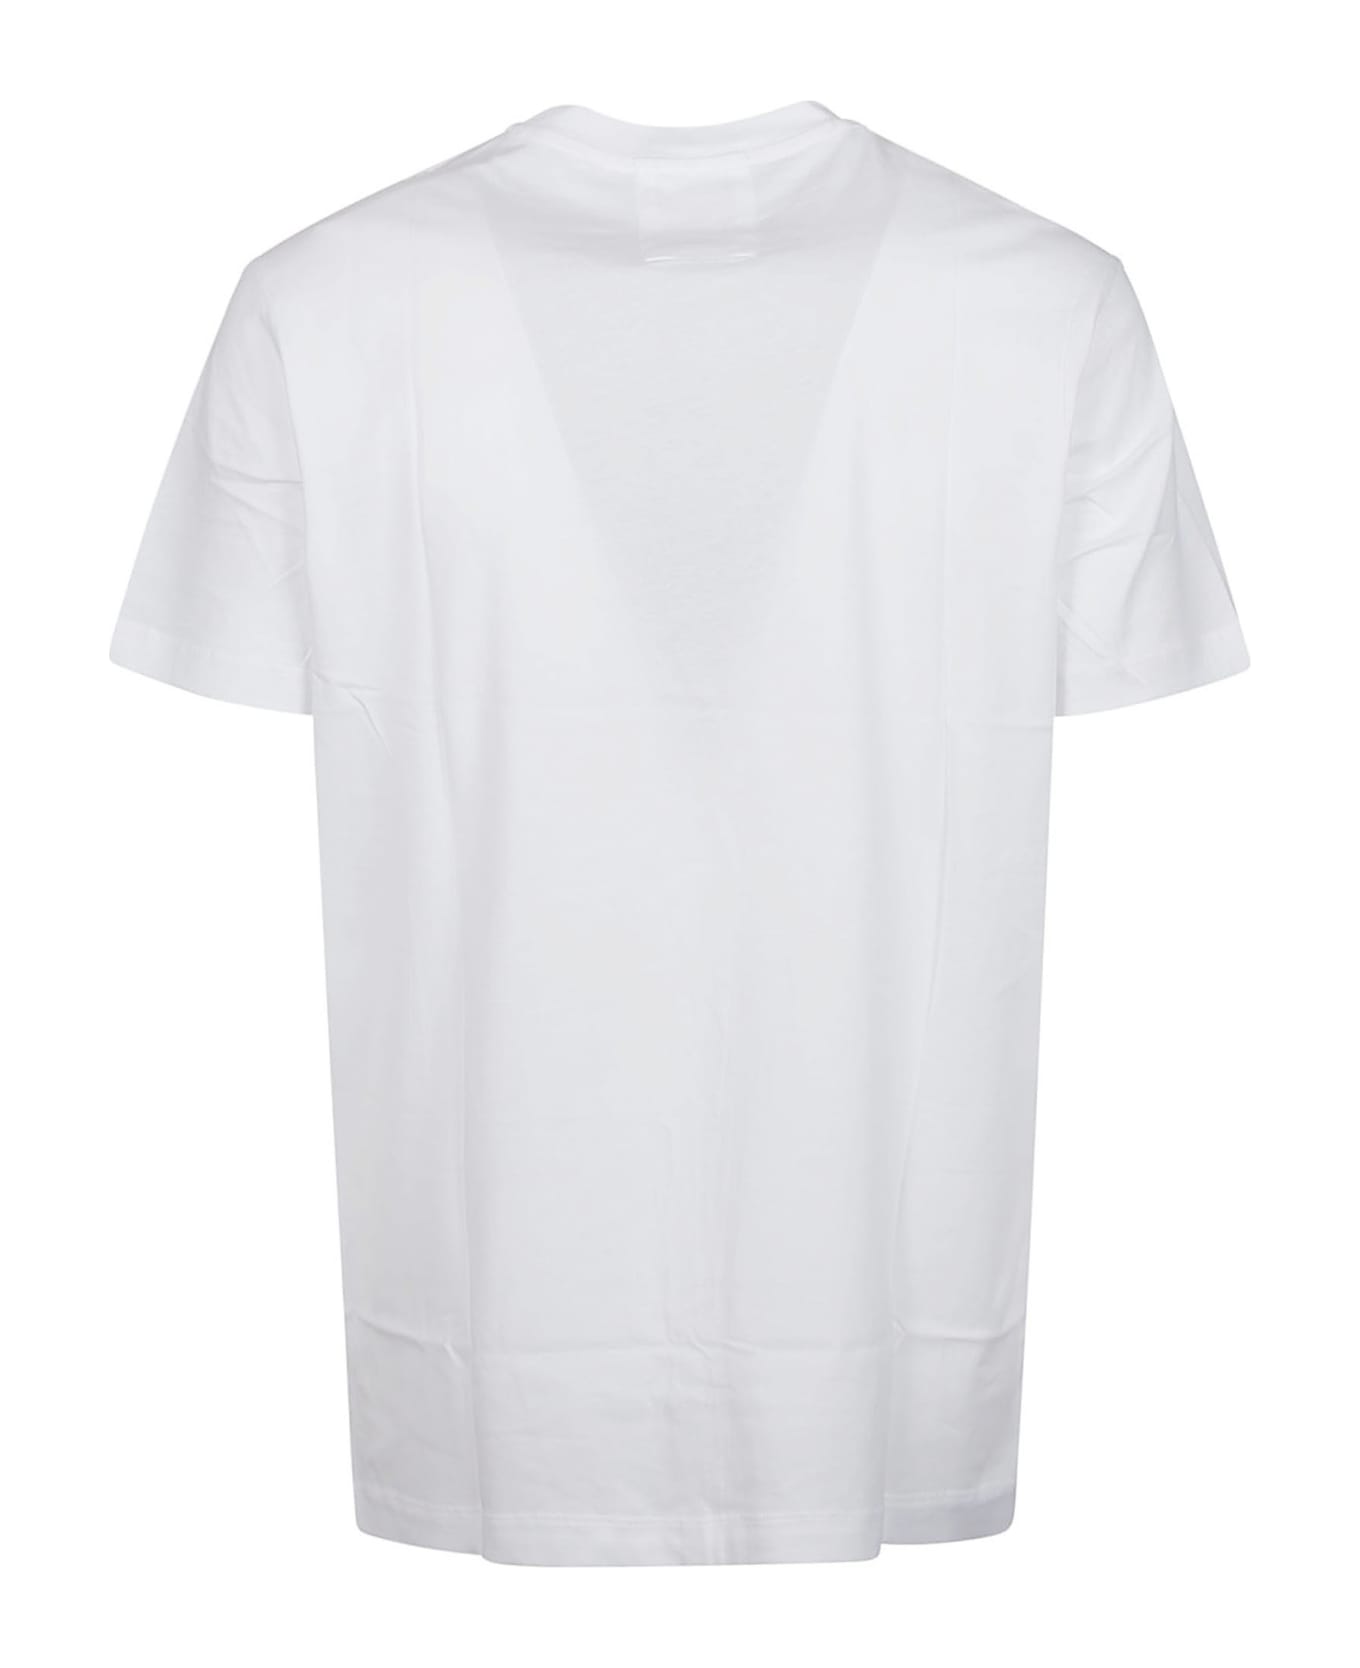 Emporio Armani T-shirt - Bianco Ottico